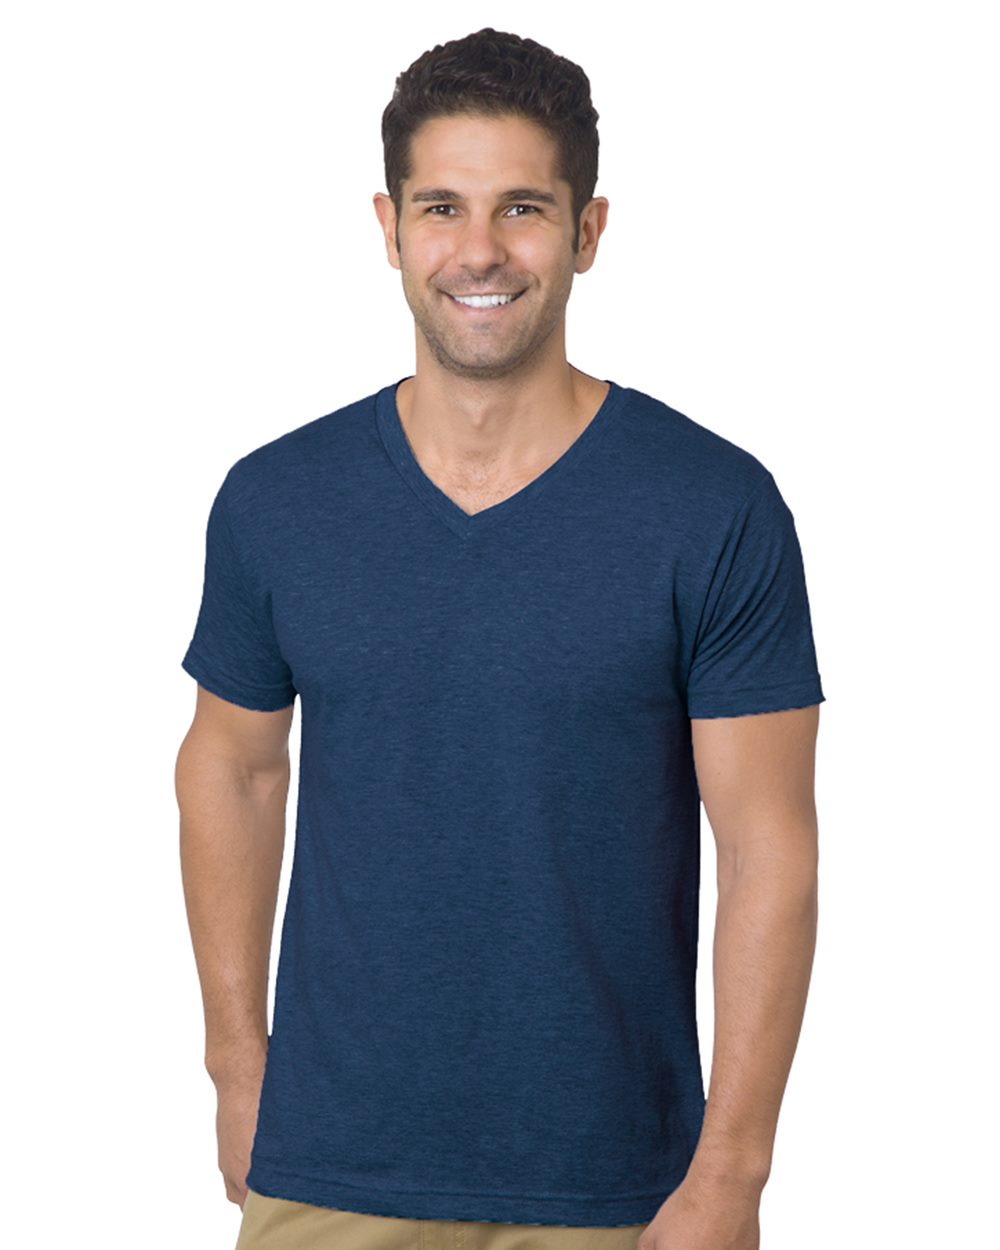 Bayside 5025 - USA-Made V-Neck T-Shirt